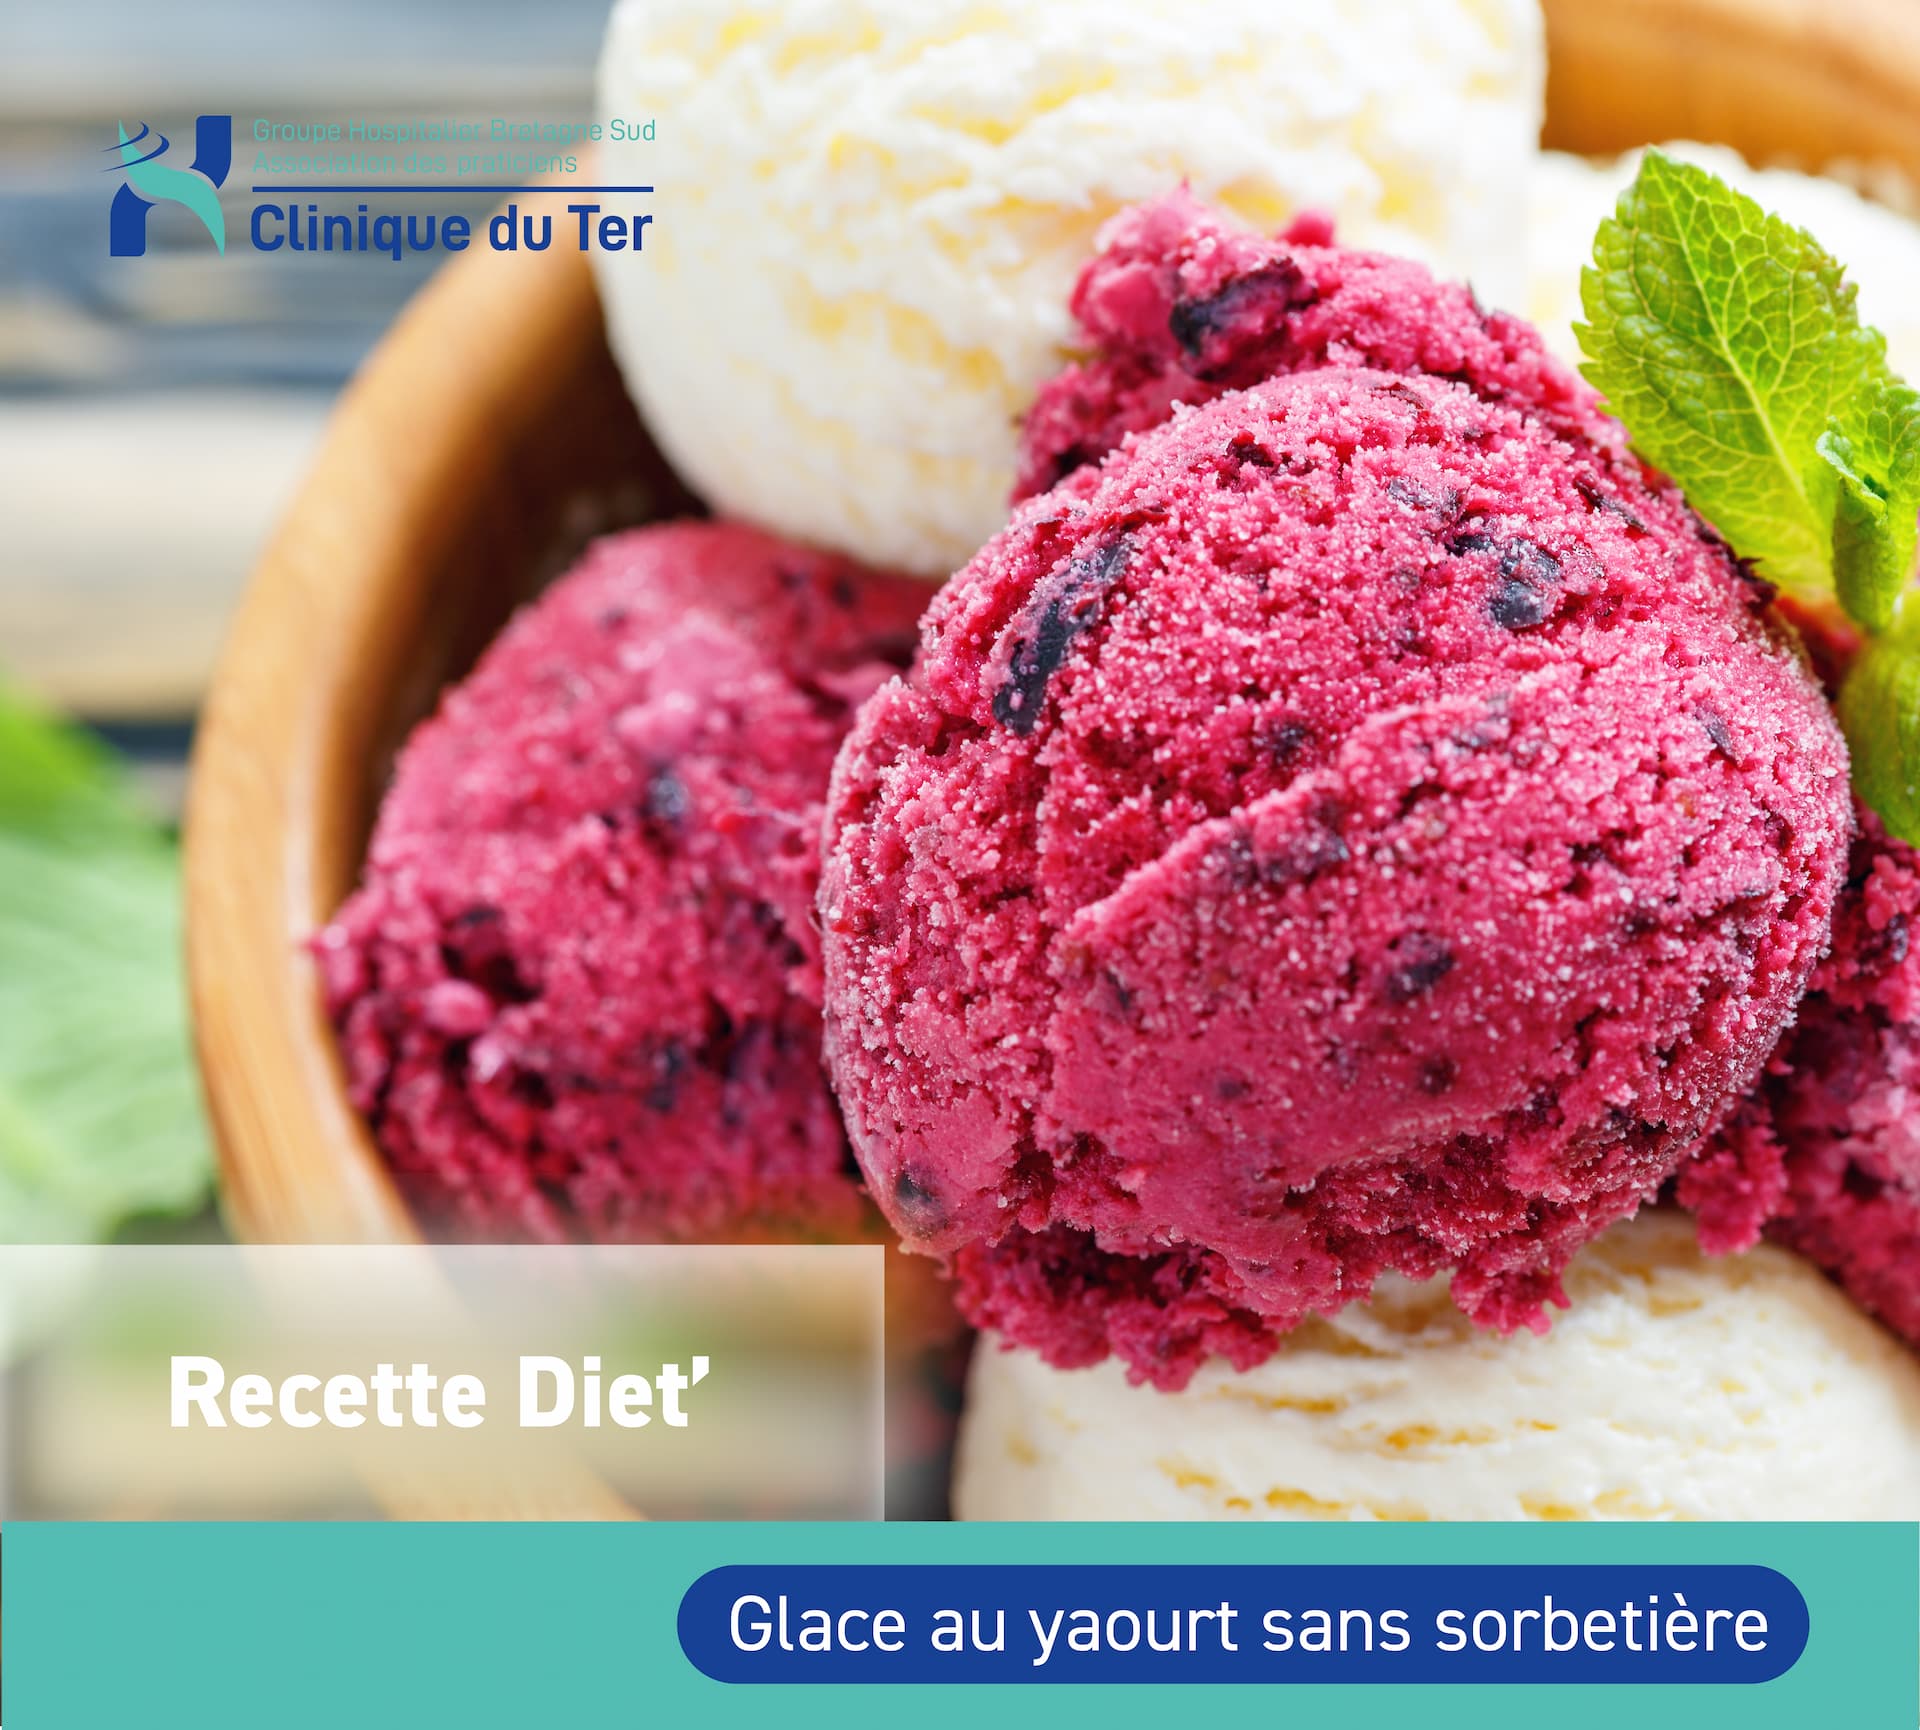 Recette diététique : Glace au yaourt sans sorbetière